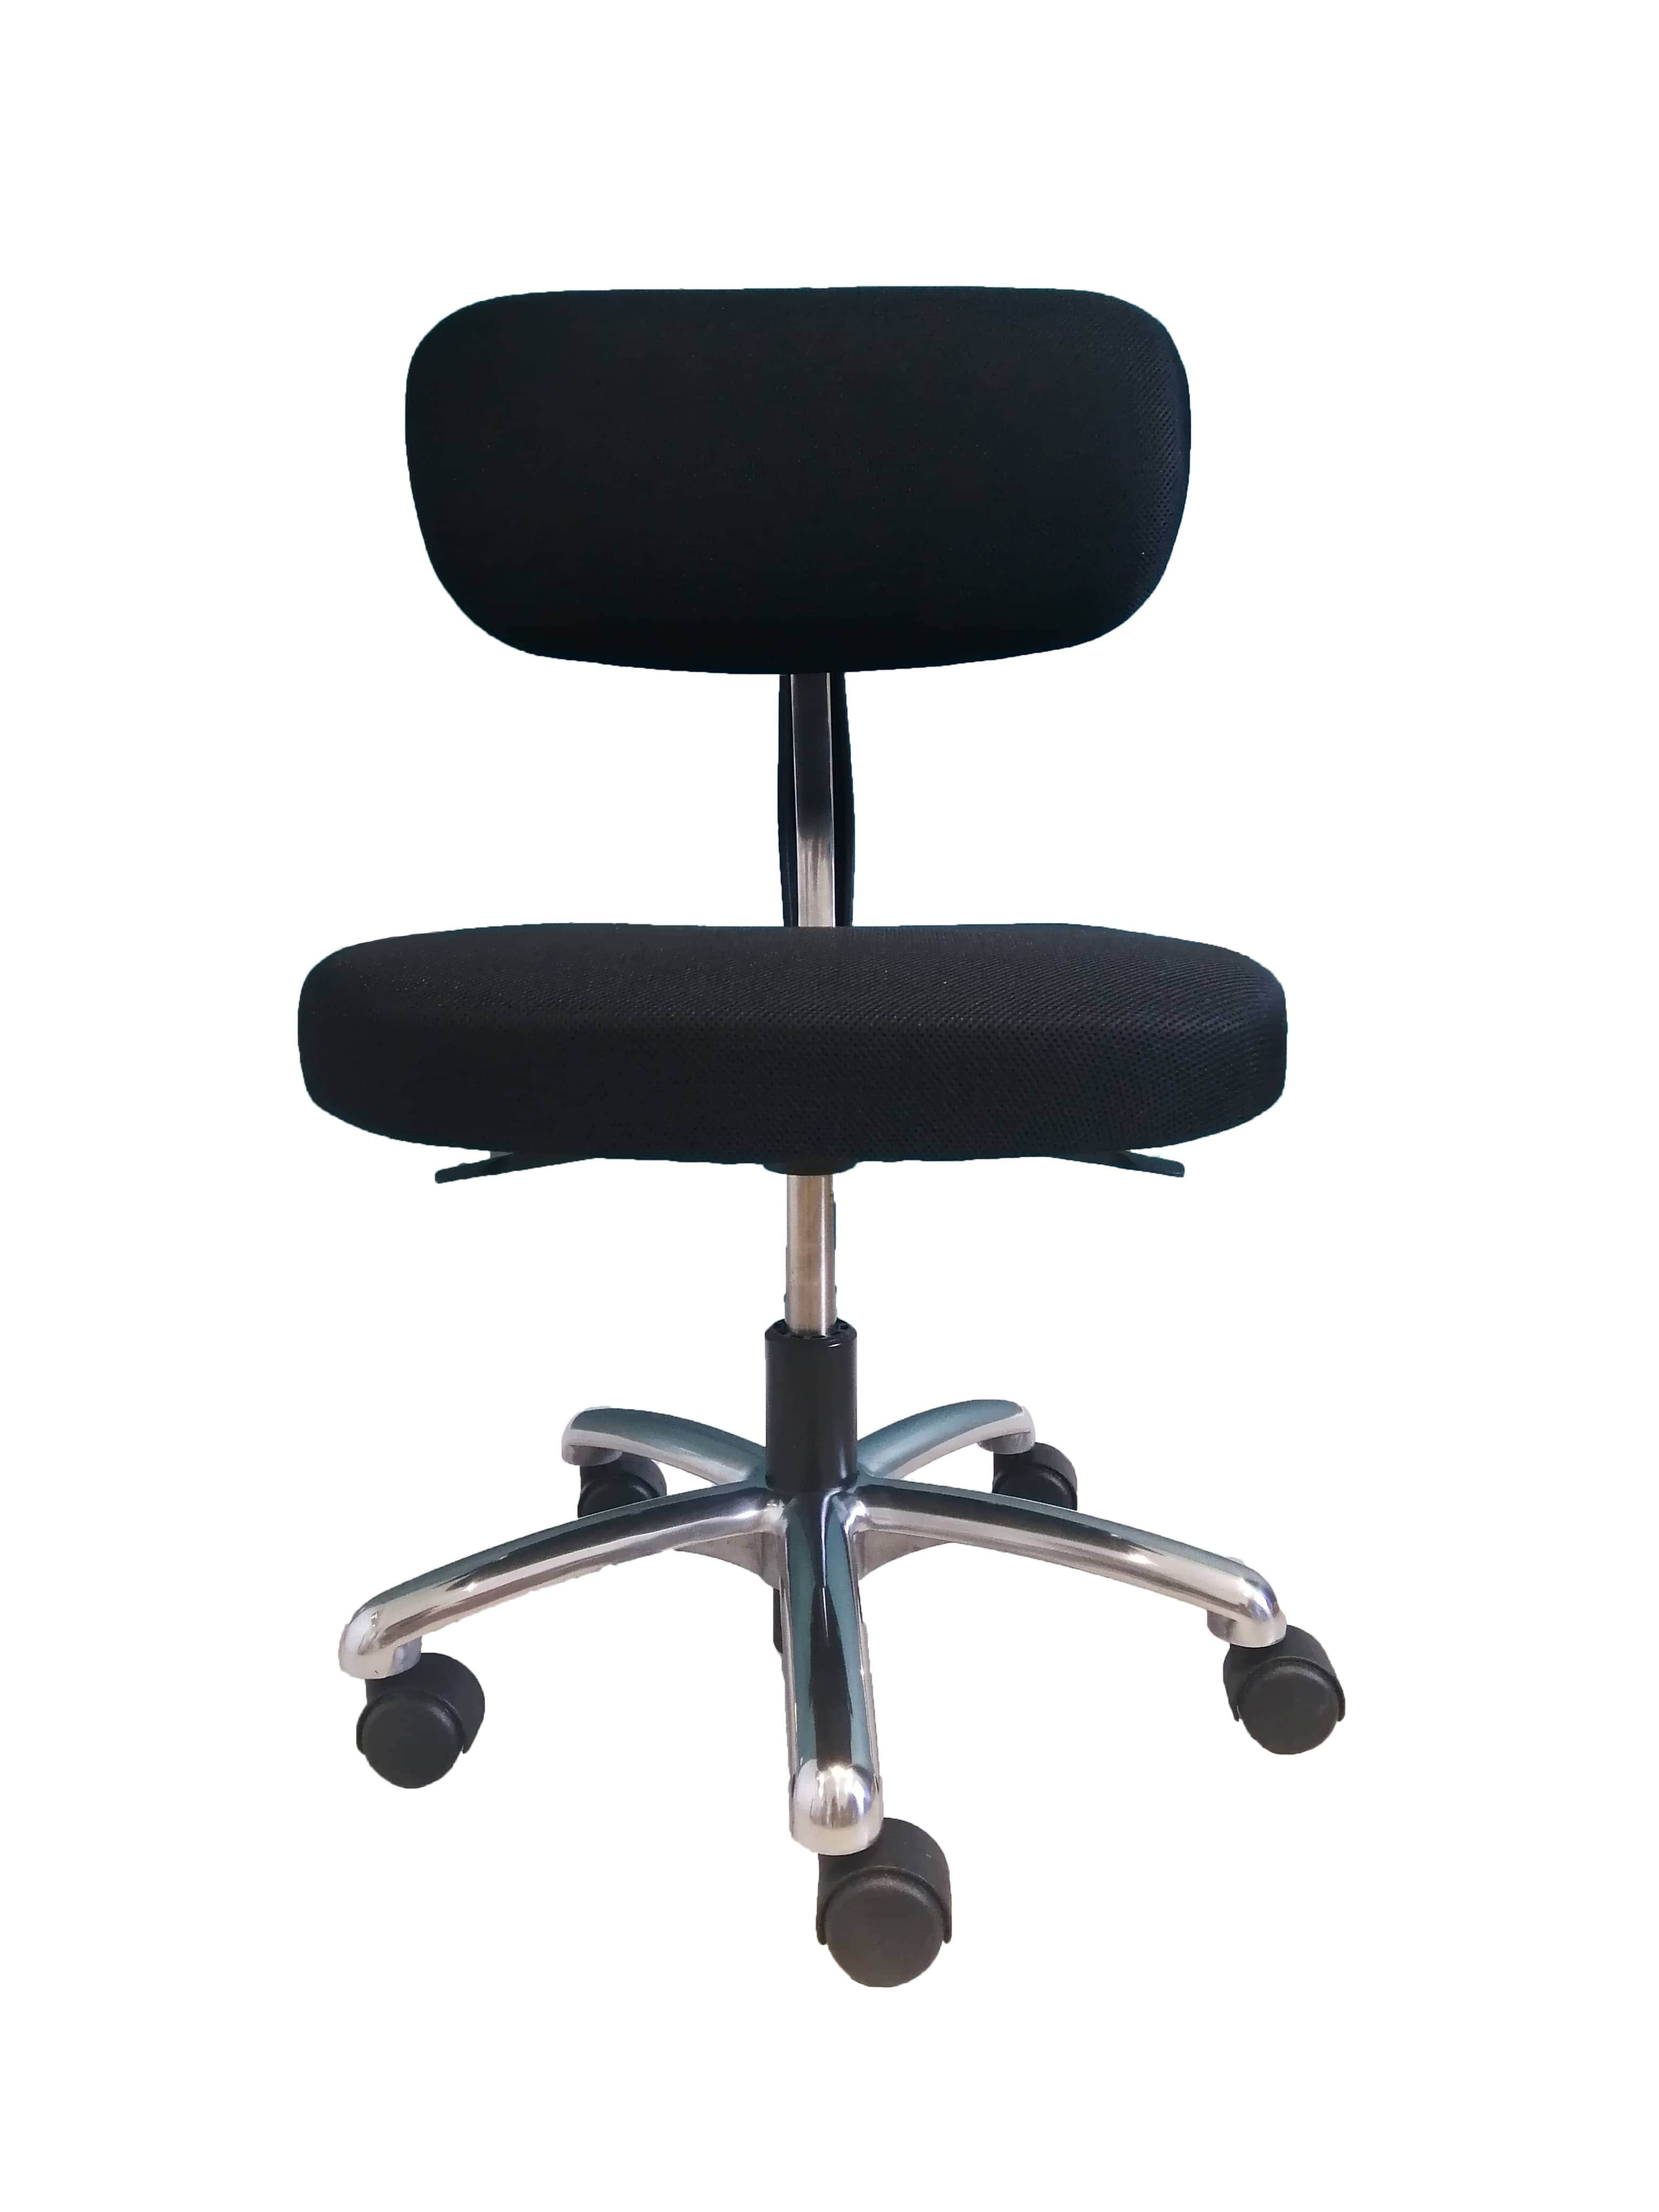 Les critères d'une bonne chaise ergonomique pour le travail de